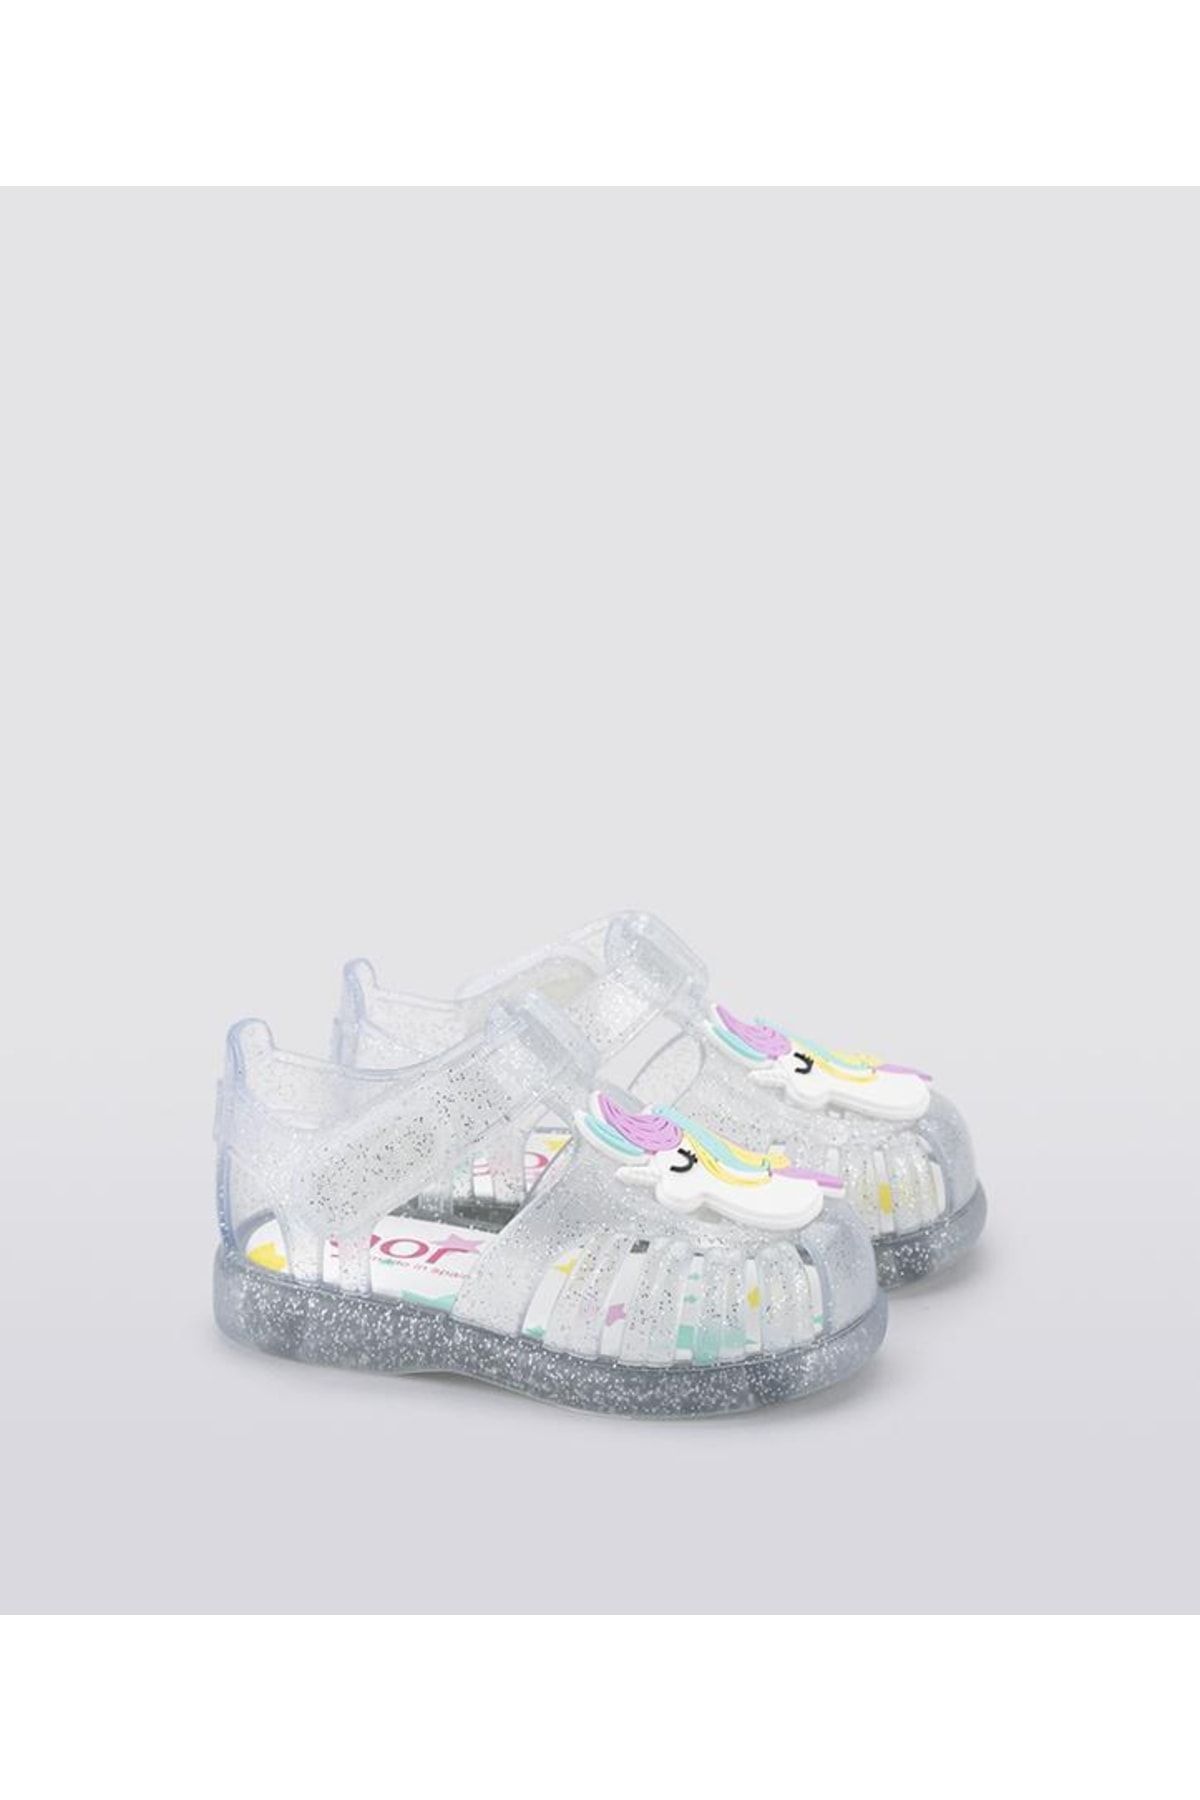 IGOR S10309 Tobby Gloss Unıcornıo Beyaz Kız Çocuk Sandalet